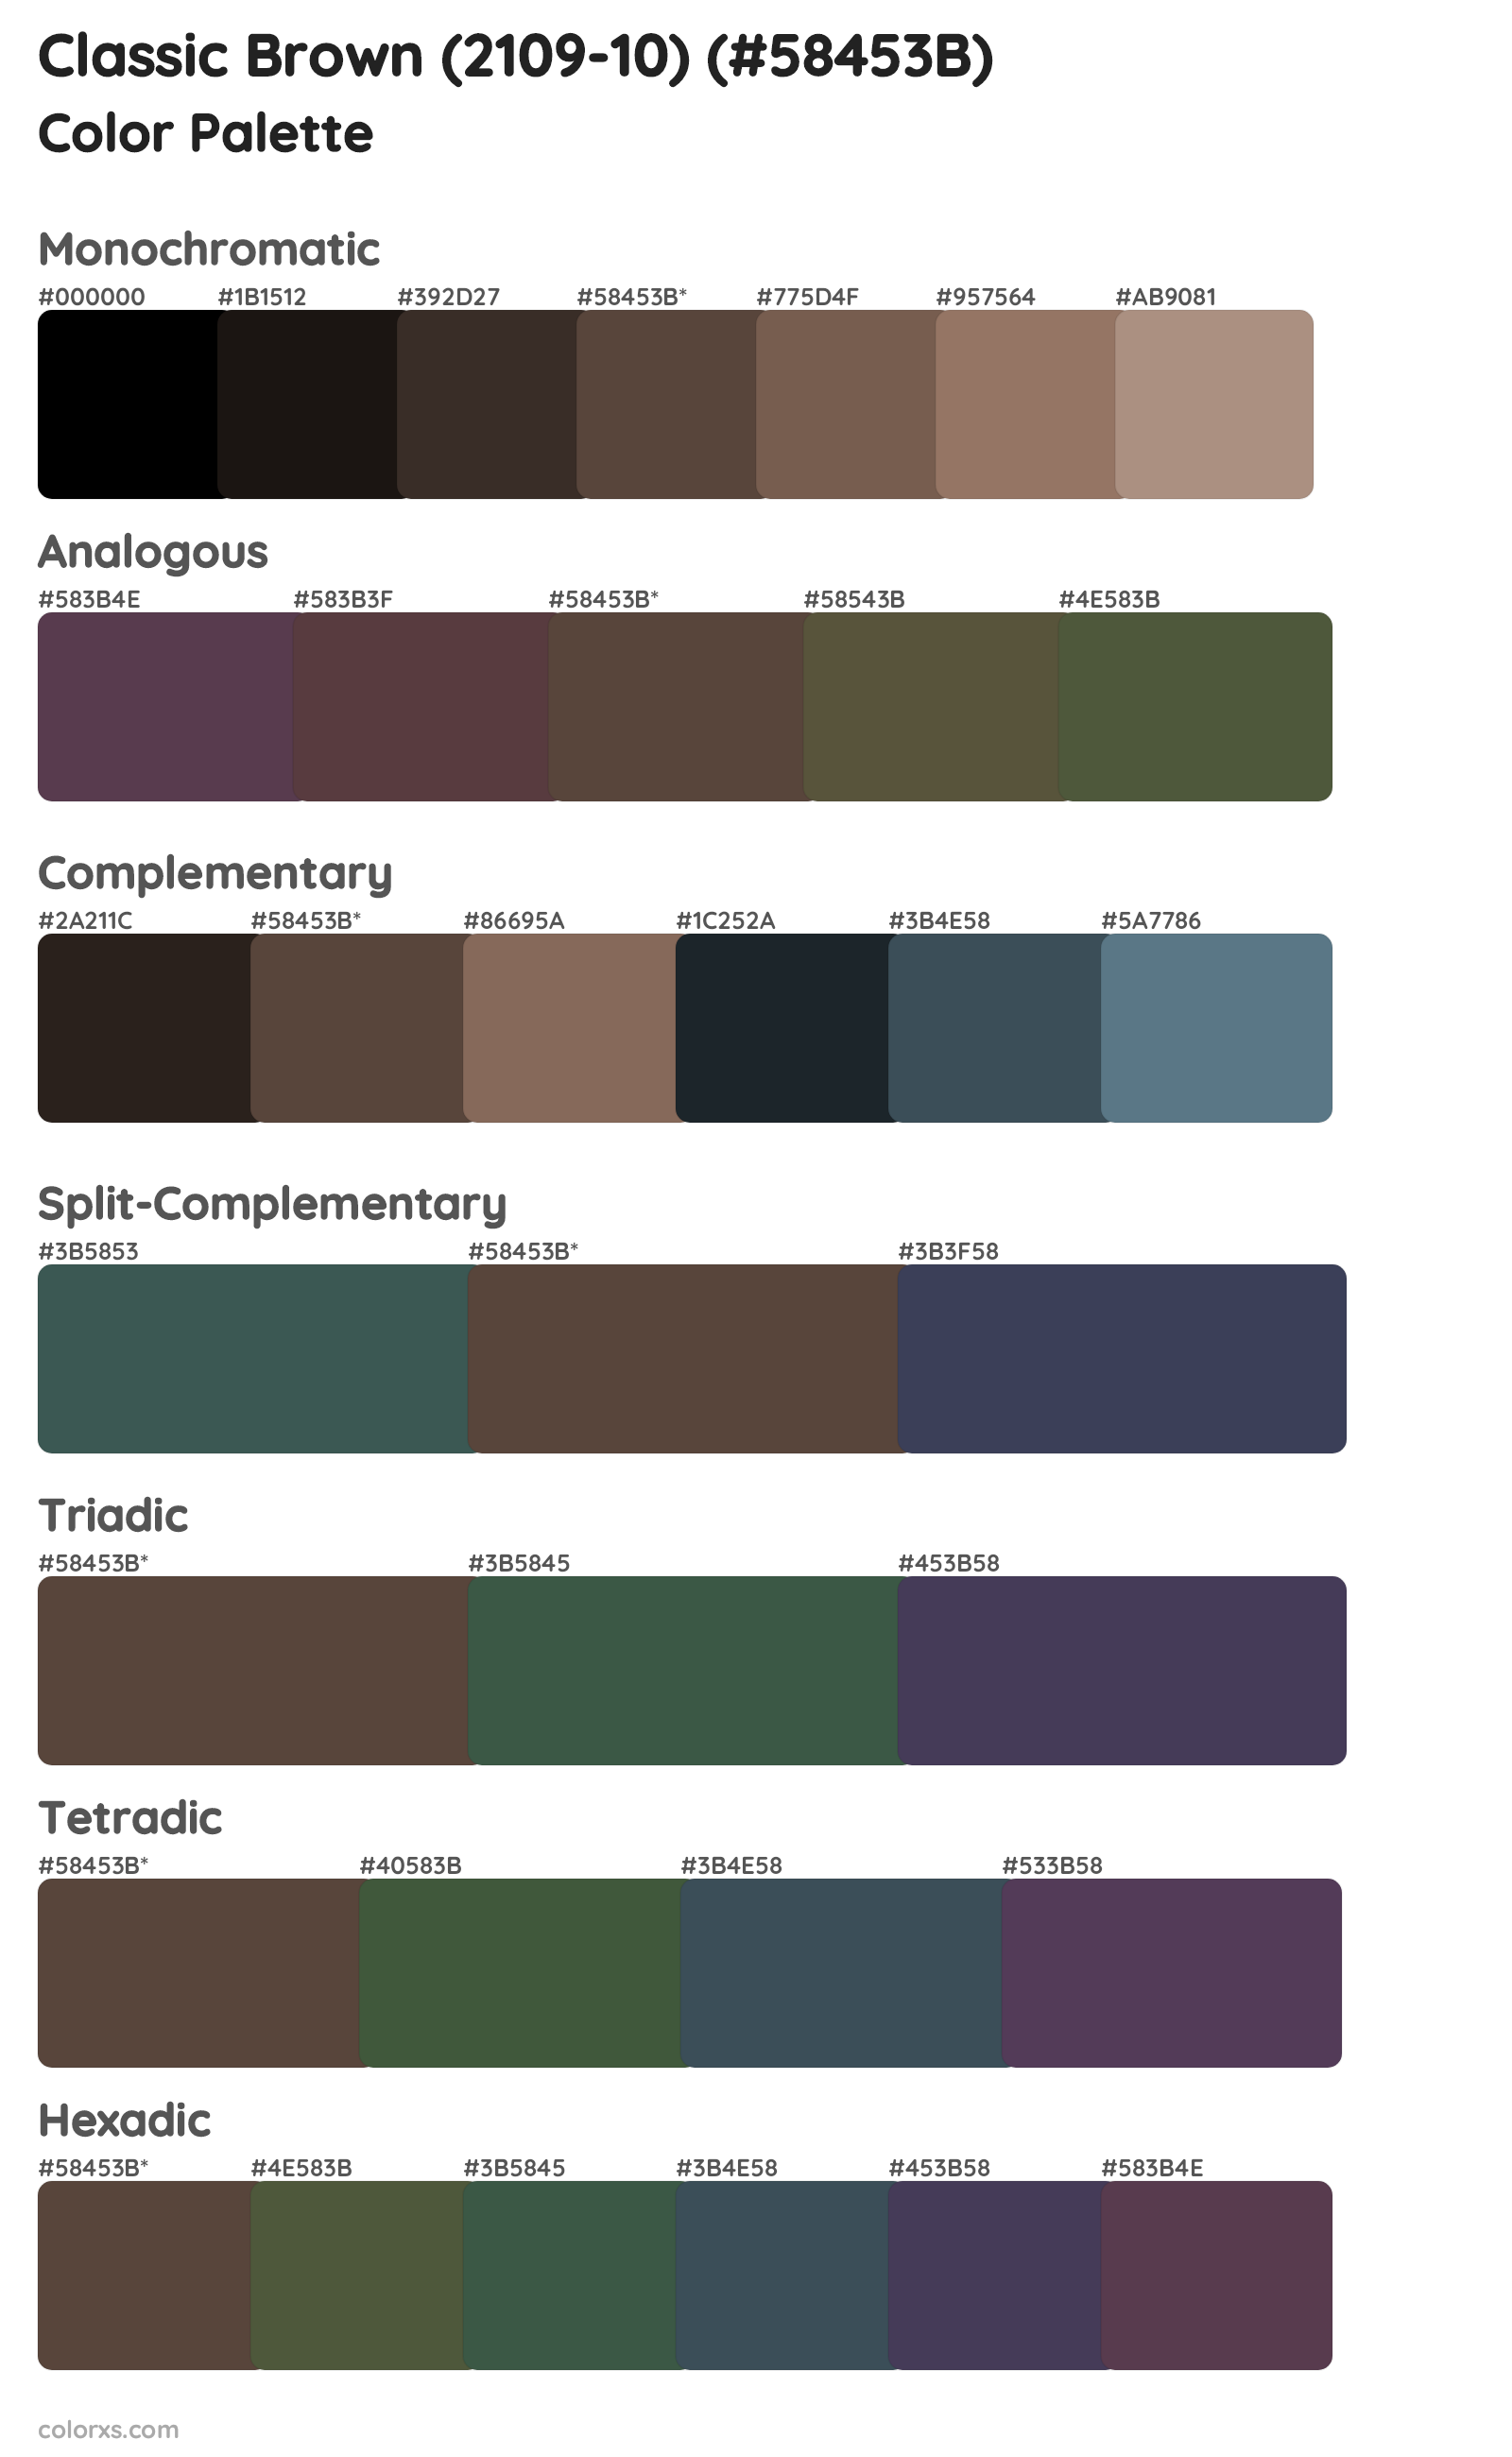 Classic Brown (2109-10) Color Scheme Palettes